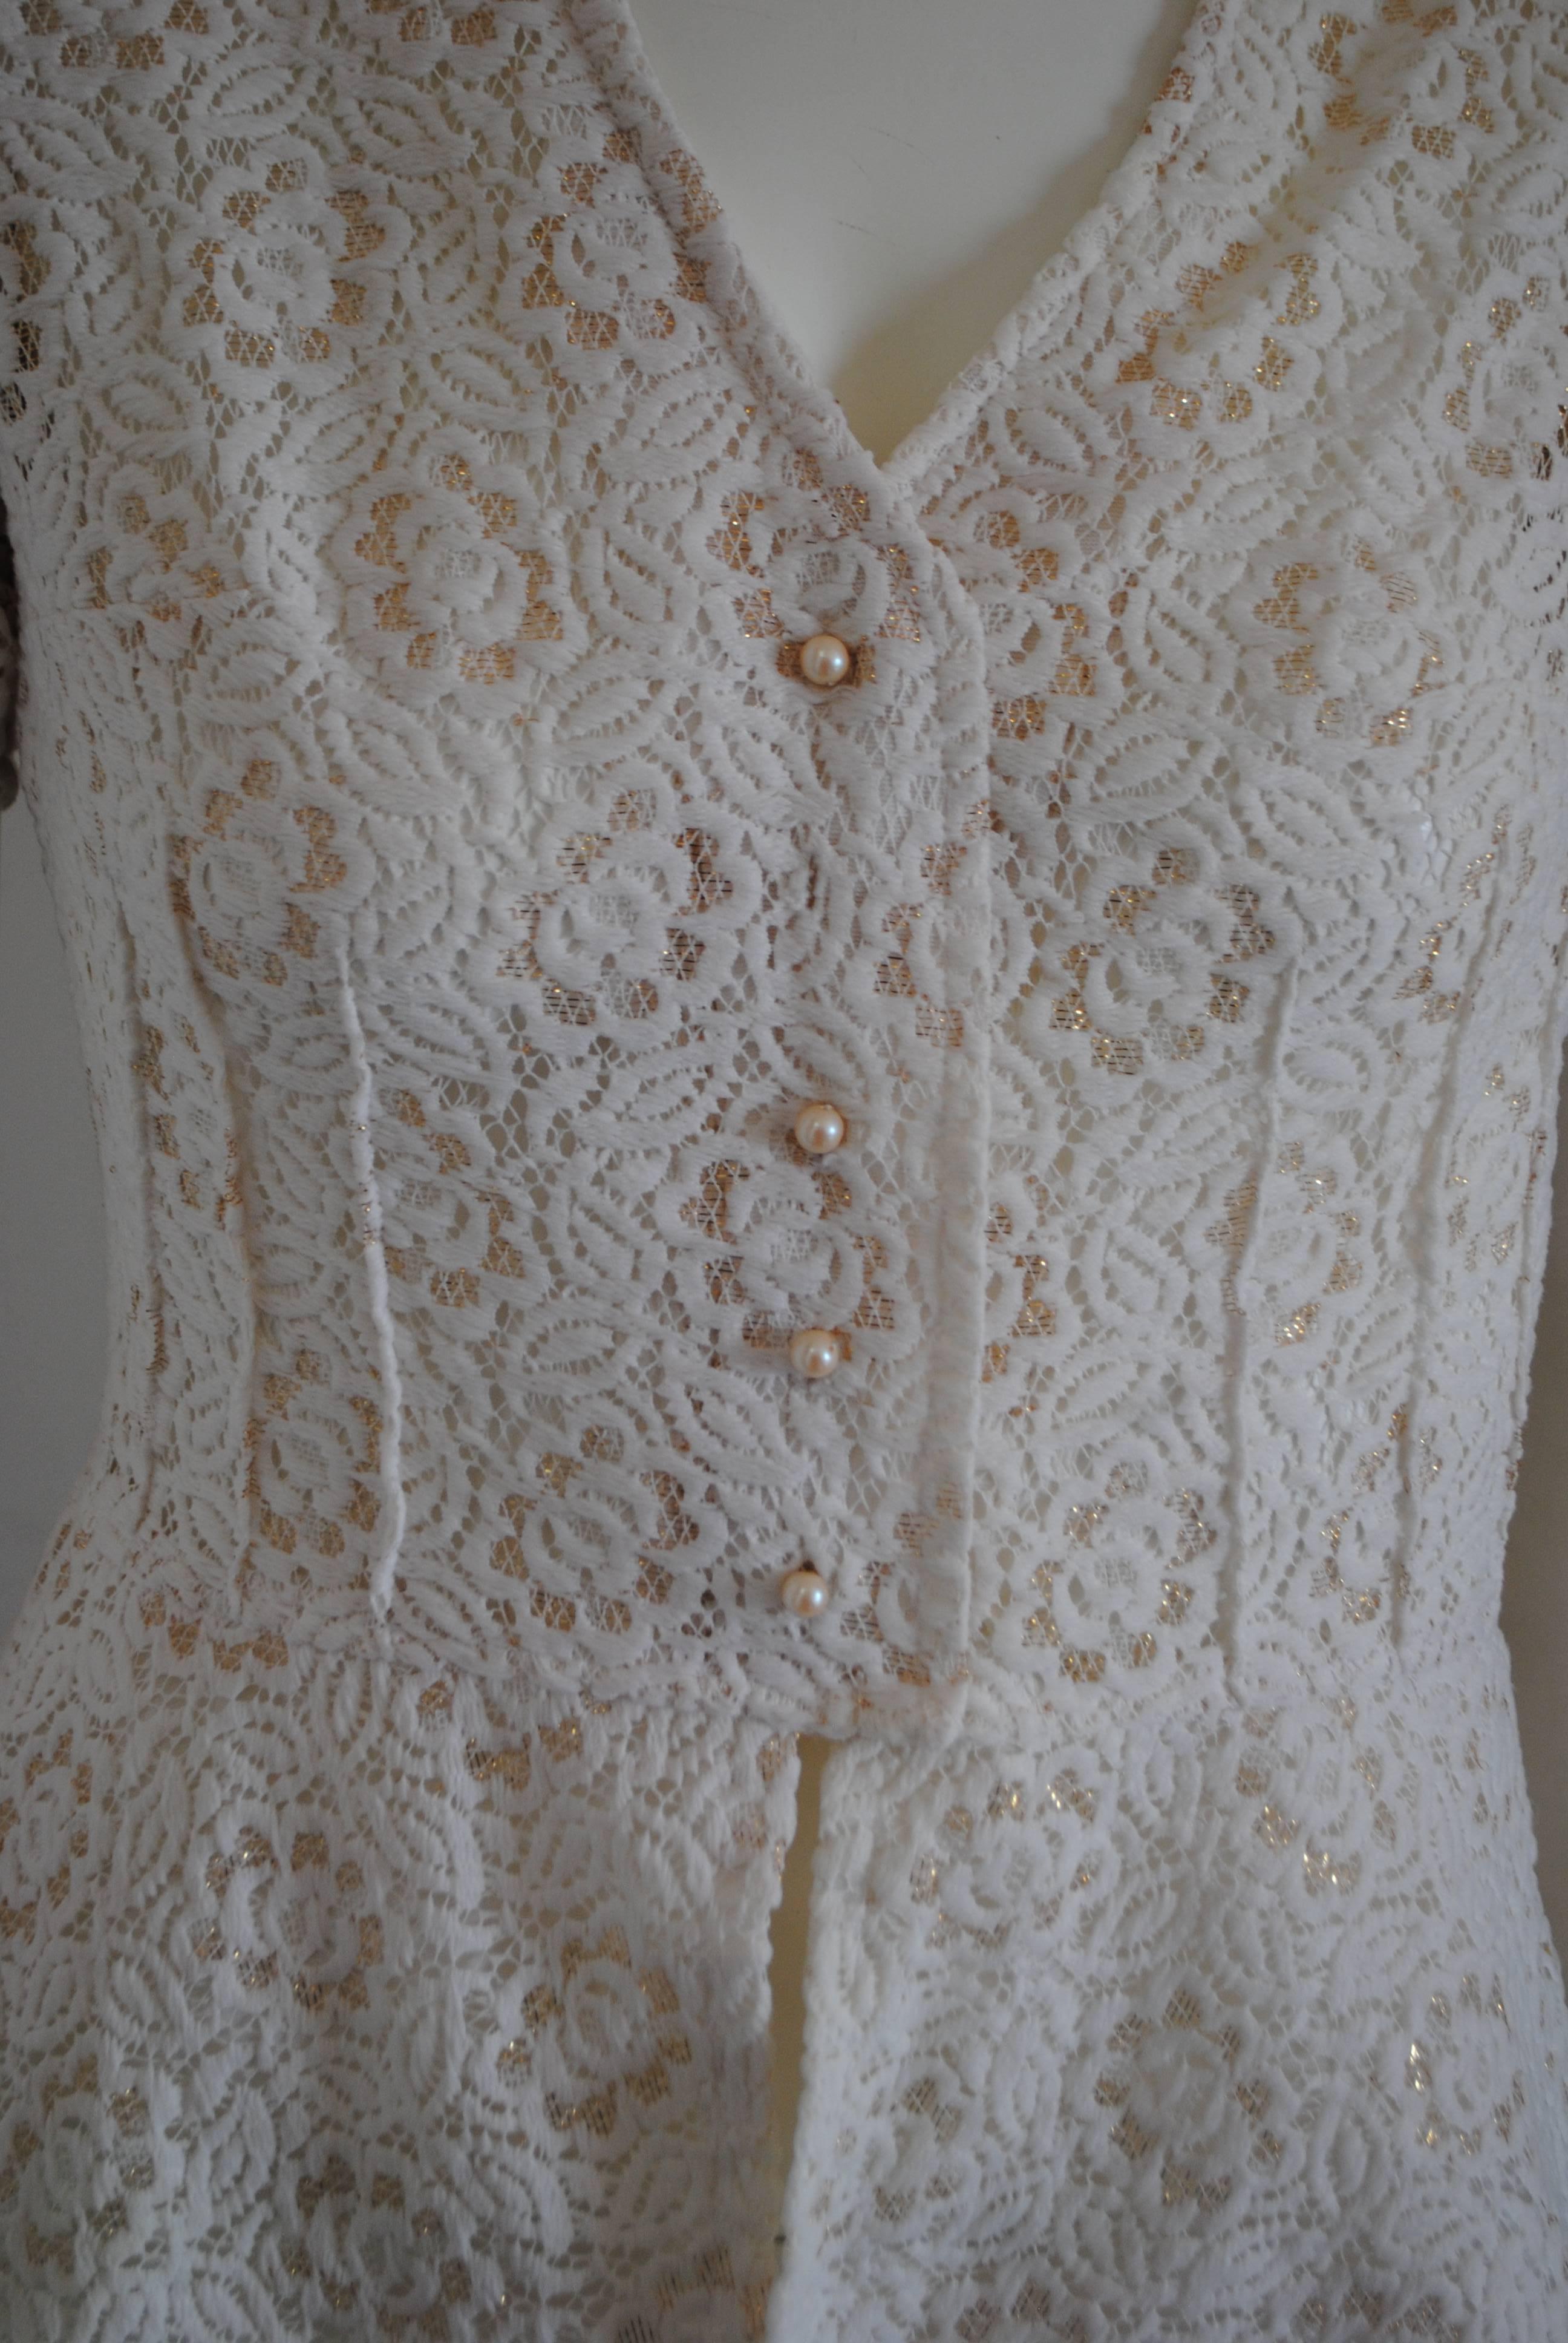 1980 Vintage veste blanche à fleurs rangées en ton or

4 boutons en fausses perles embellis

Totalement fabriqué en Italie en taille S